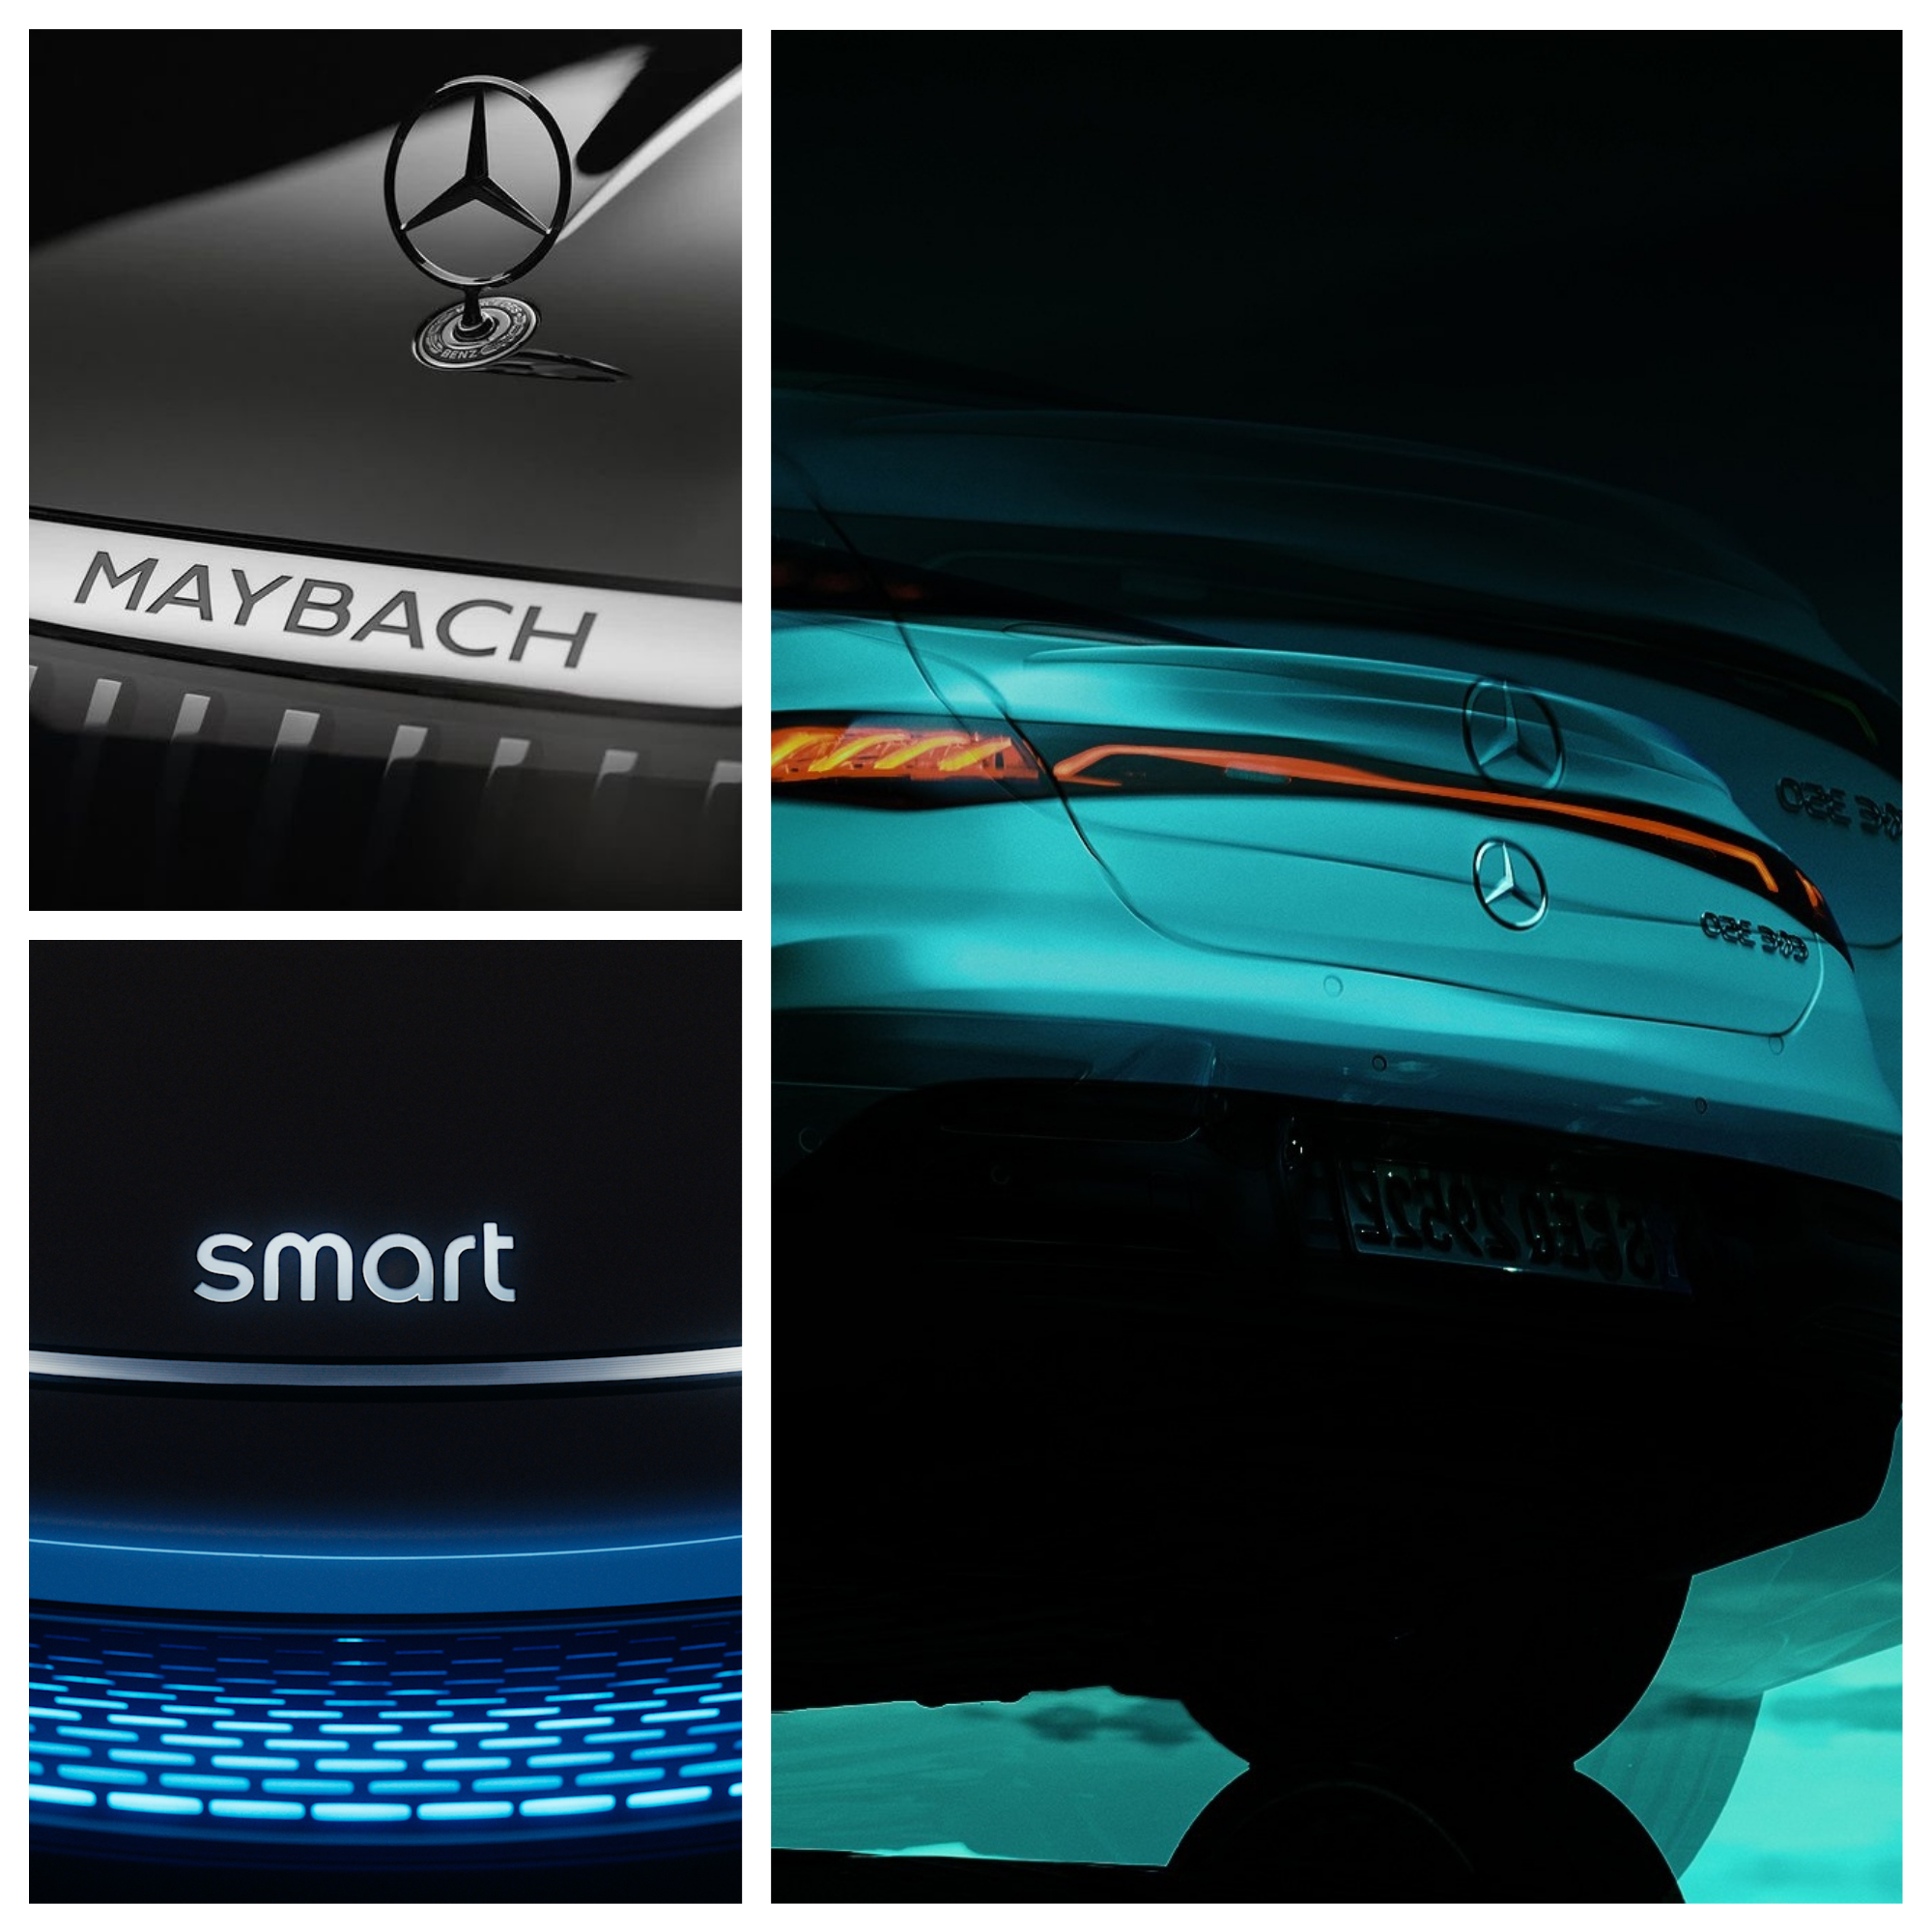 Salon del automovil de Munich - IAA 2021 - Mercedes - smart - Maybach - EQE - prototipo - coche elctrico